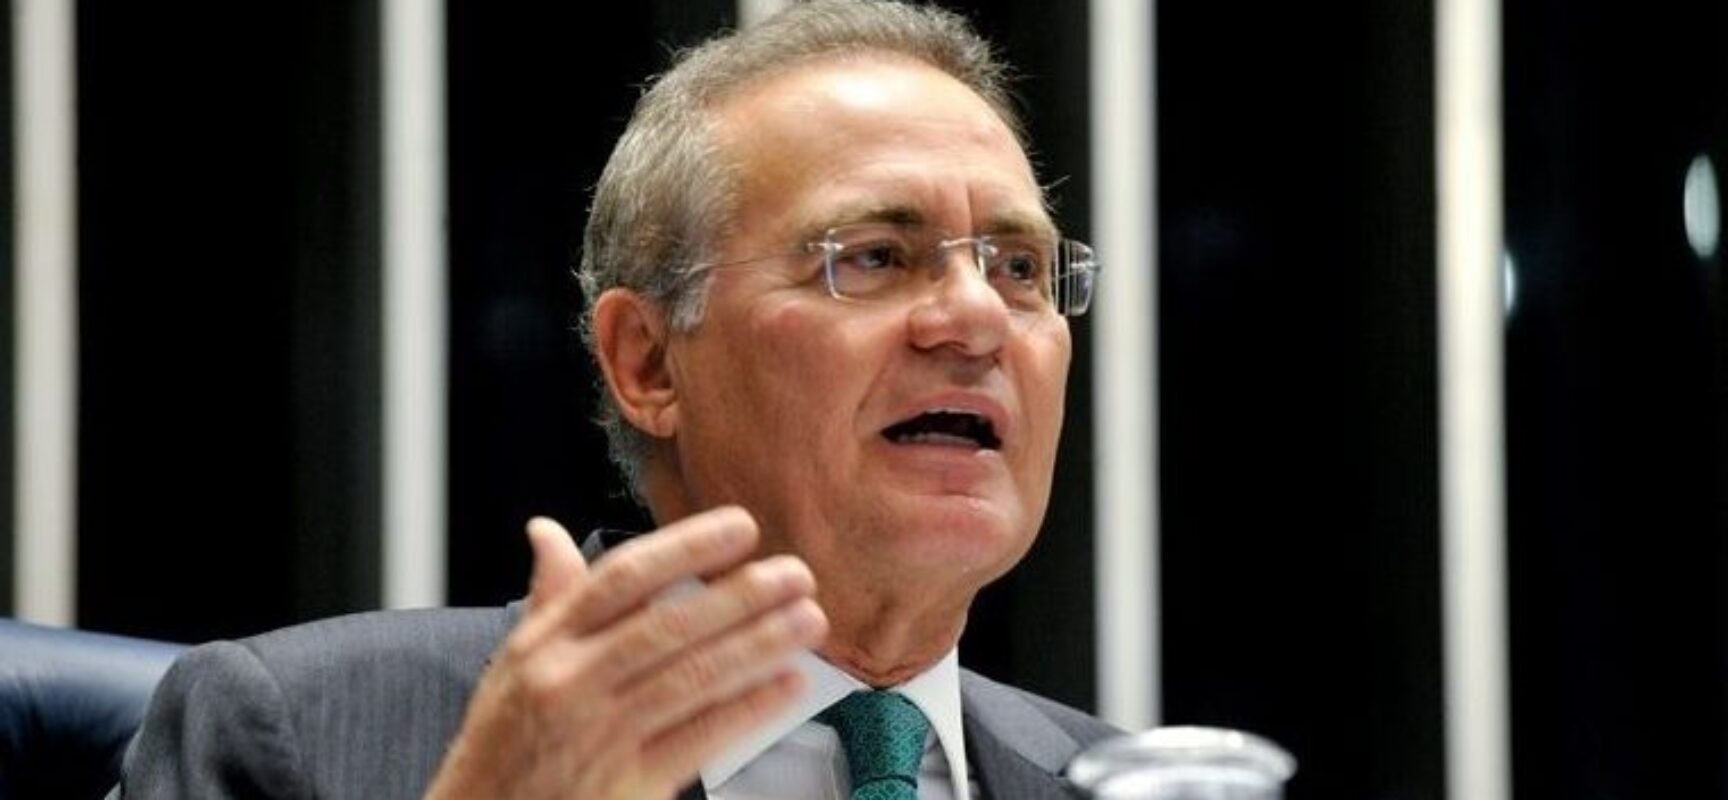 Liminar suspende indicação de Renan Calheiros para relator da CPI